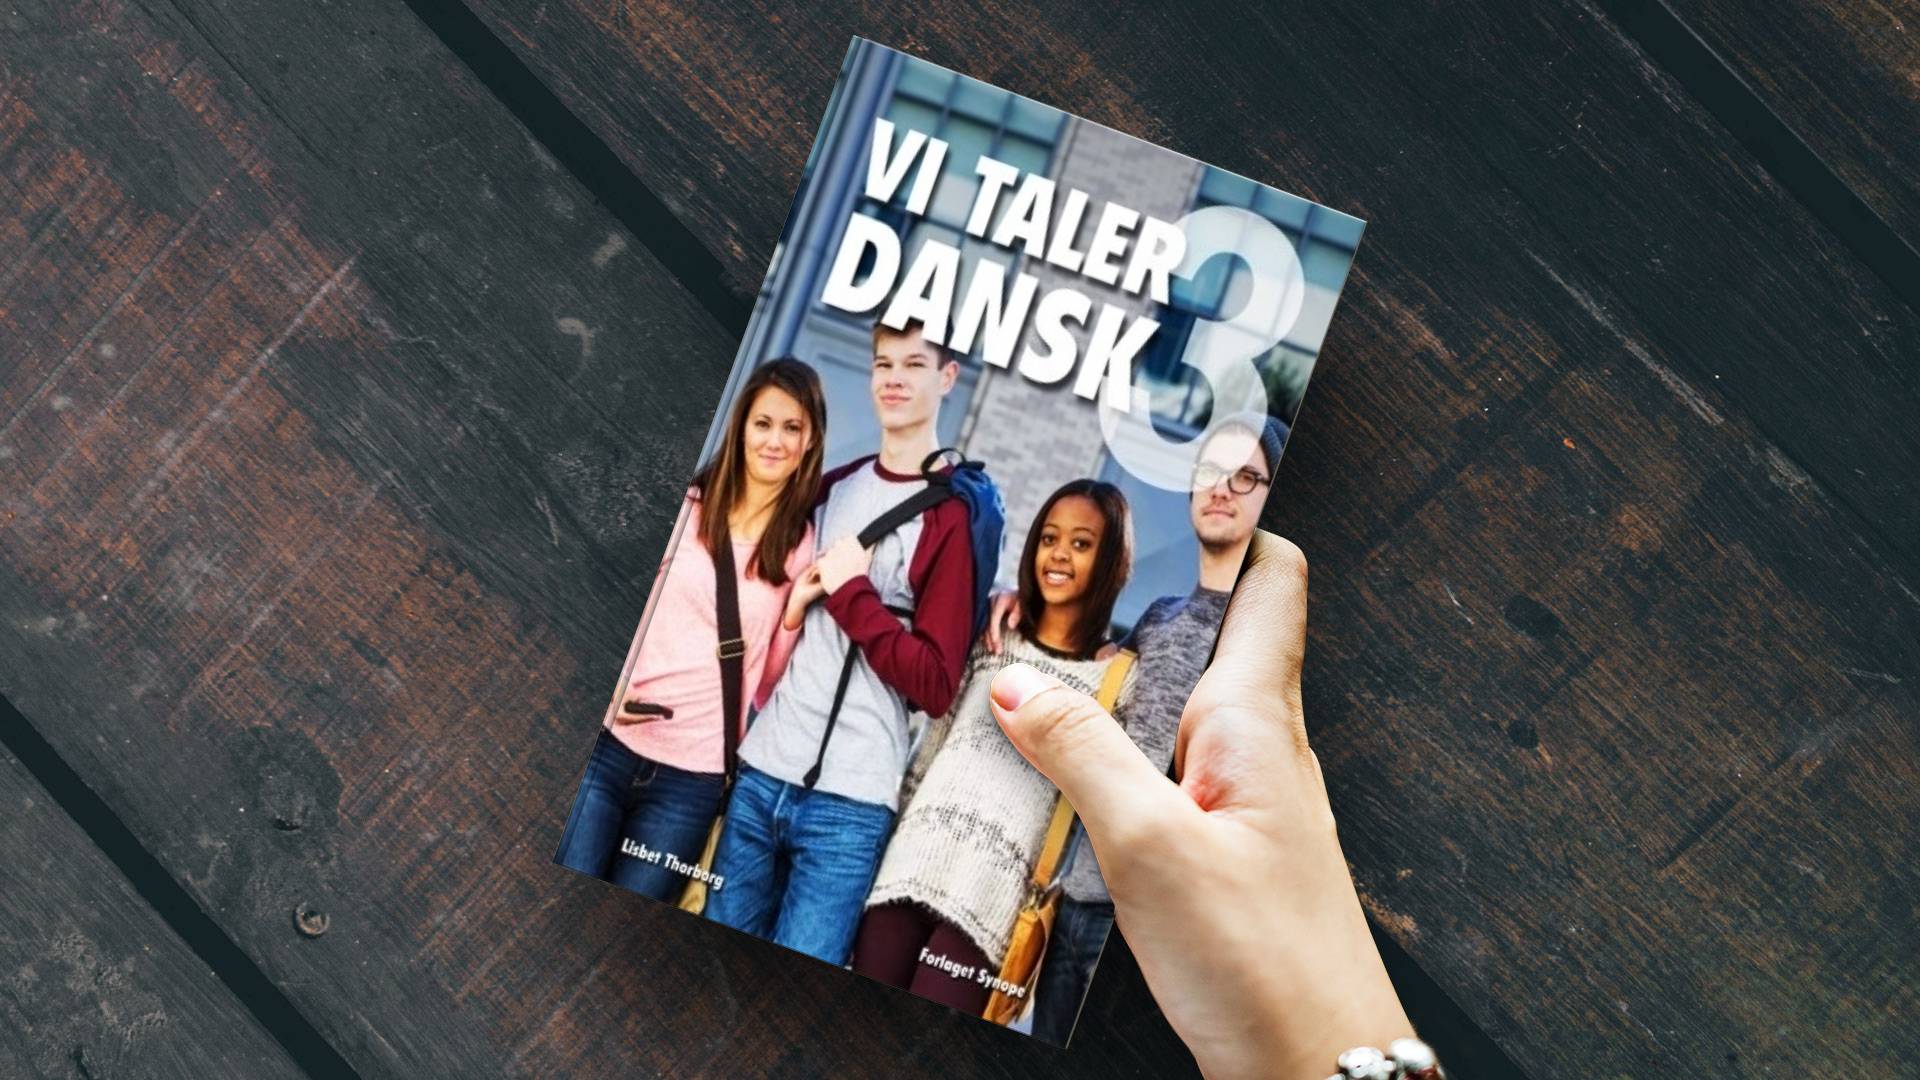 خرید کتاب زبان دانمارکی | فروشگاه اینترنتی کتاب زبان | Vi Taler Dansk 3 | وی تالر دنسک سه